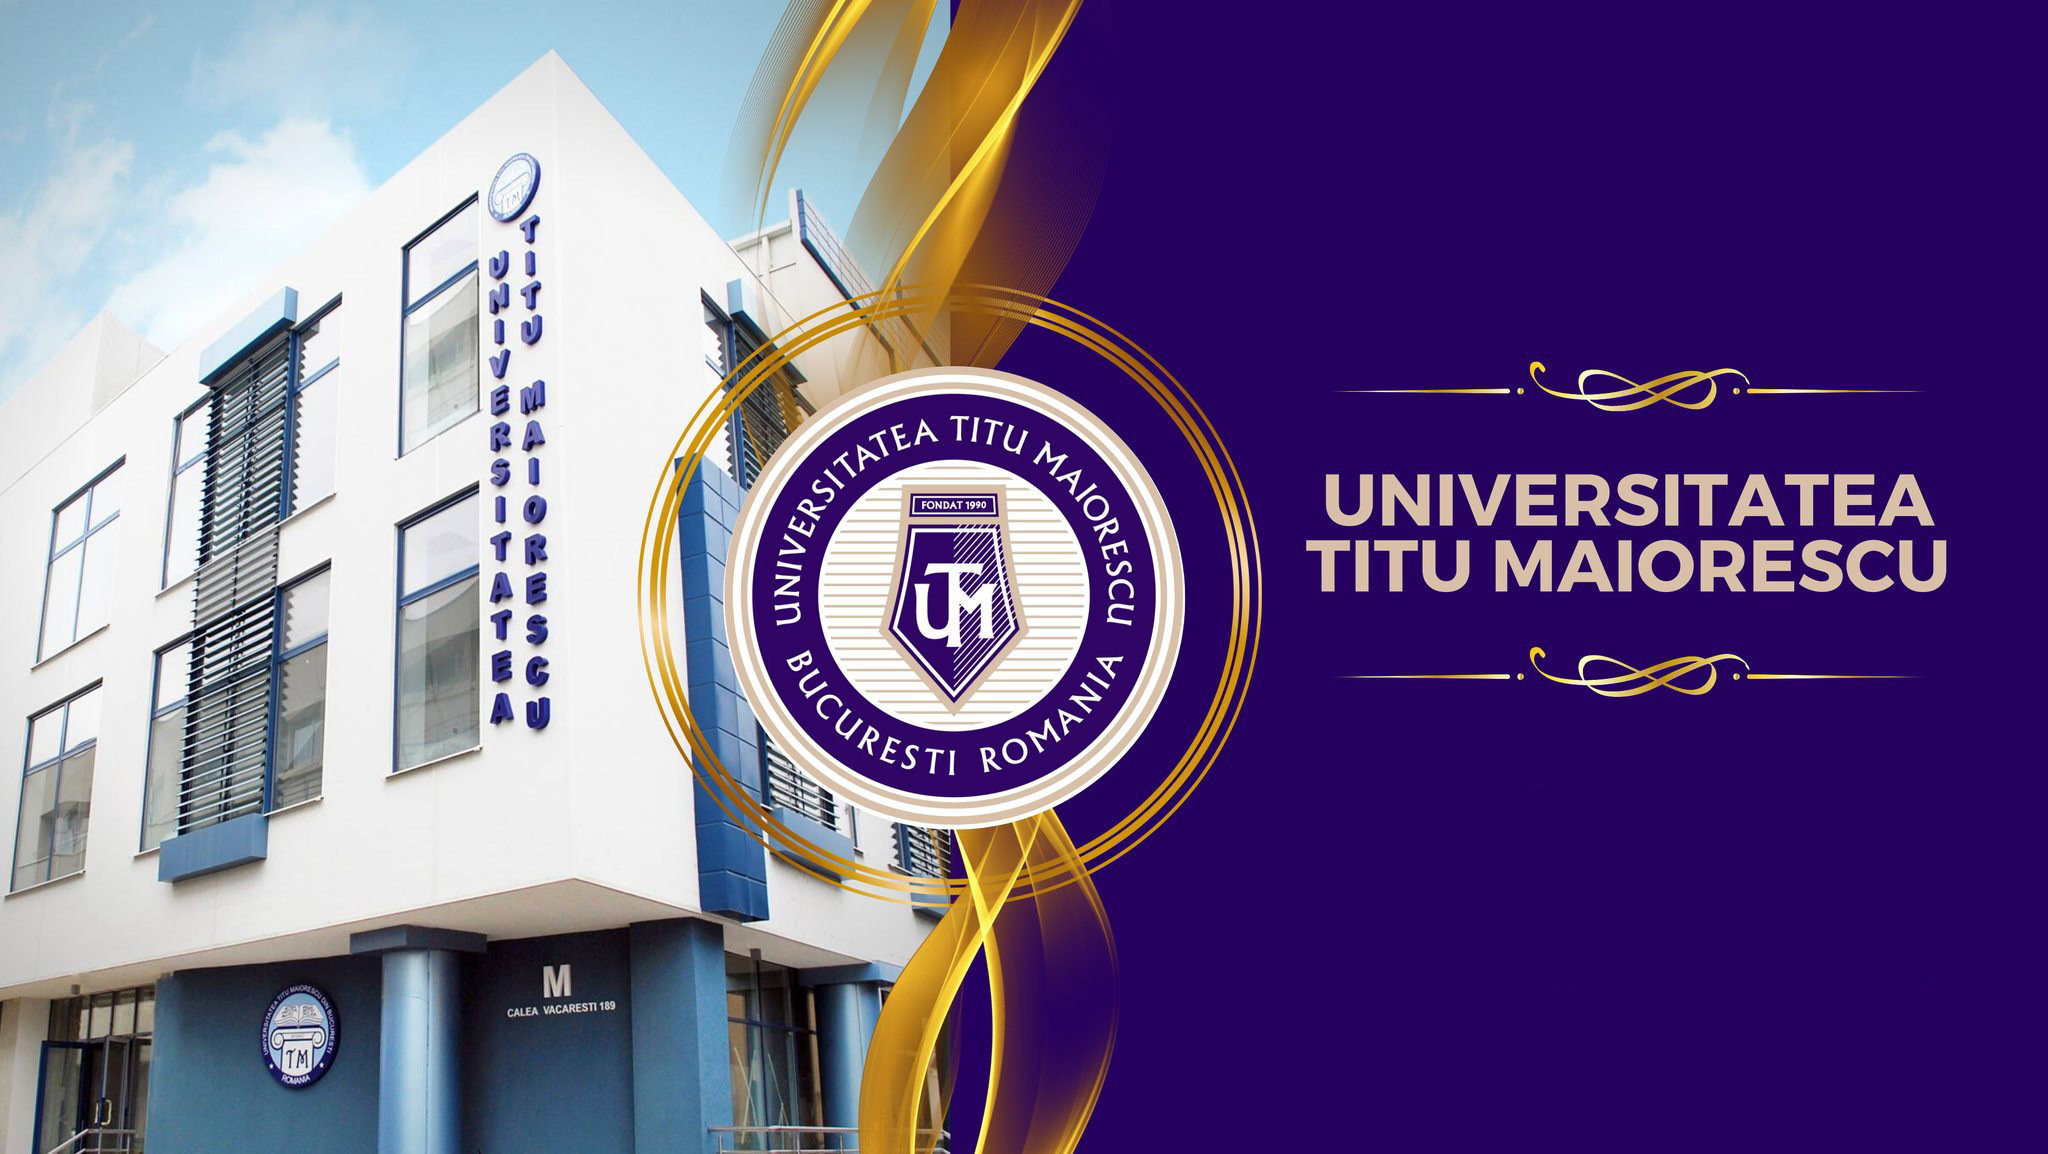 Universitatea "Titu Maiorescu" București